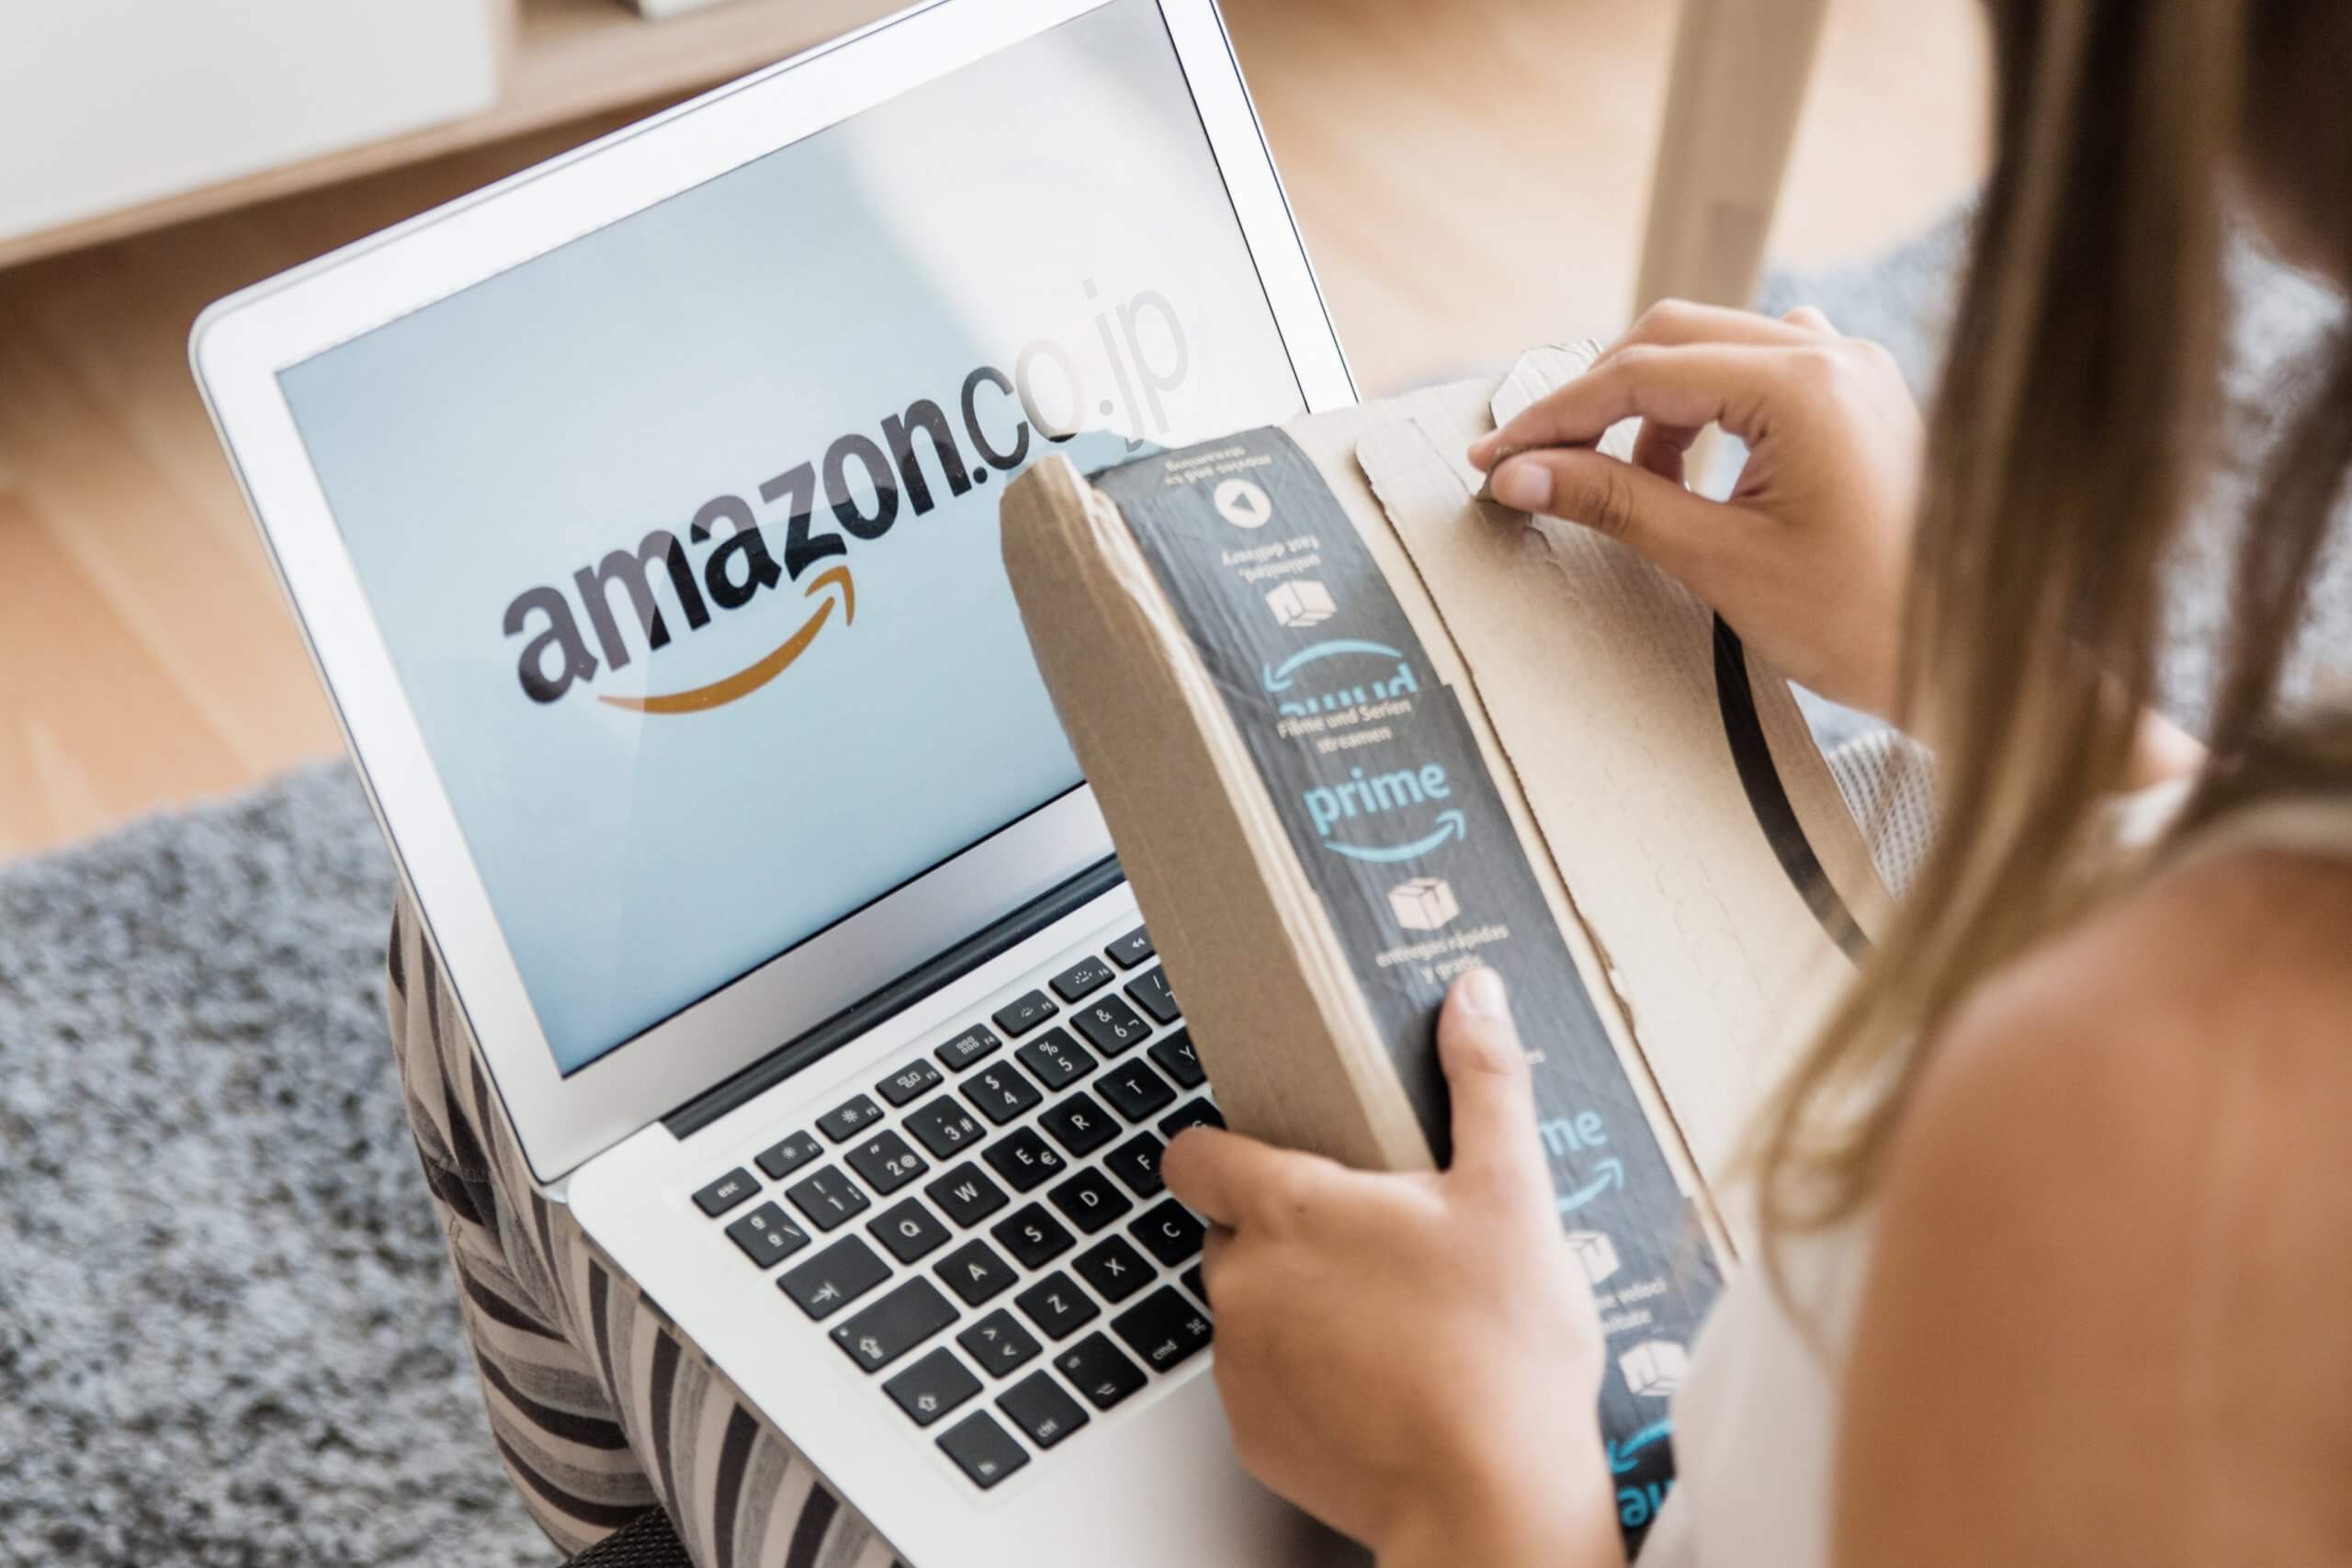 Imag r com. Амазон электронная коммерция. The Amazon. E-Commerce site Amazon. Customers Amazon.